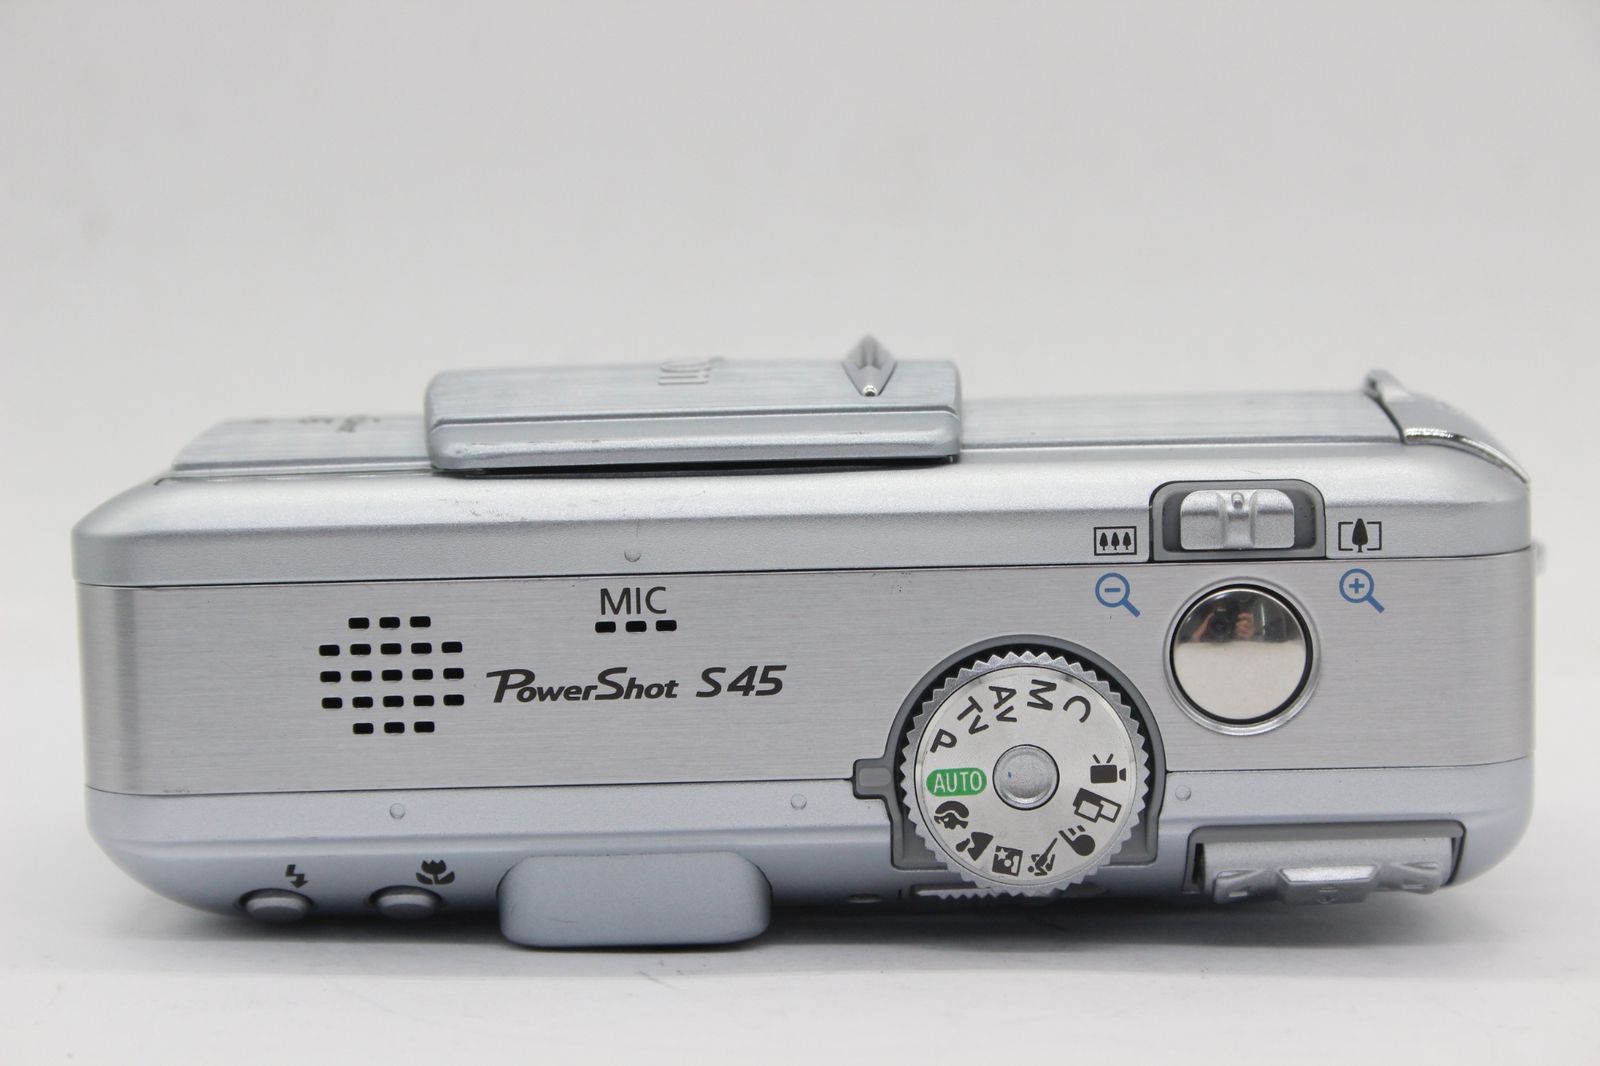 キヤノン 【返品保証】 キャノン Canon PowerShot S45 AiAF 3x バッテリー付き コンパクトデジタルカメラ s9005